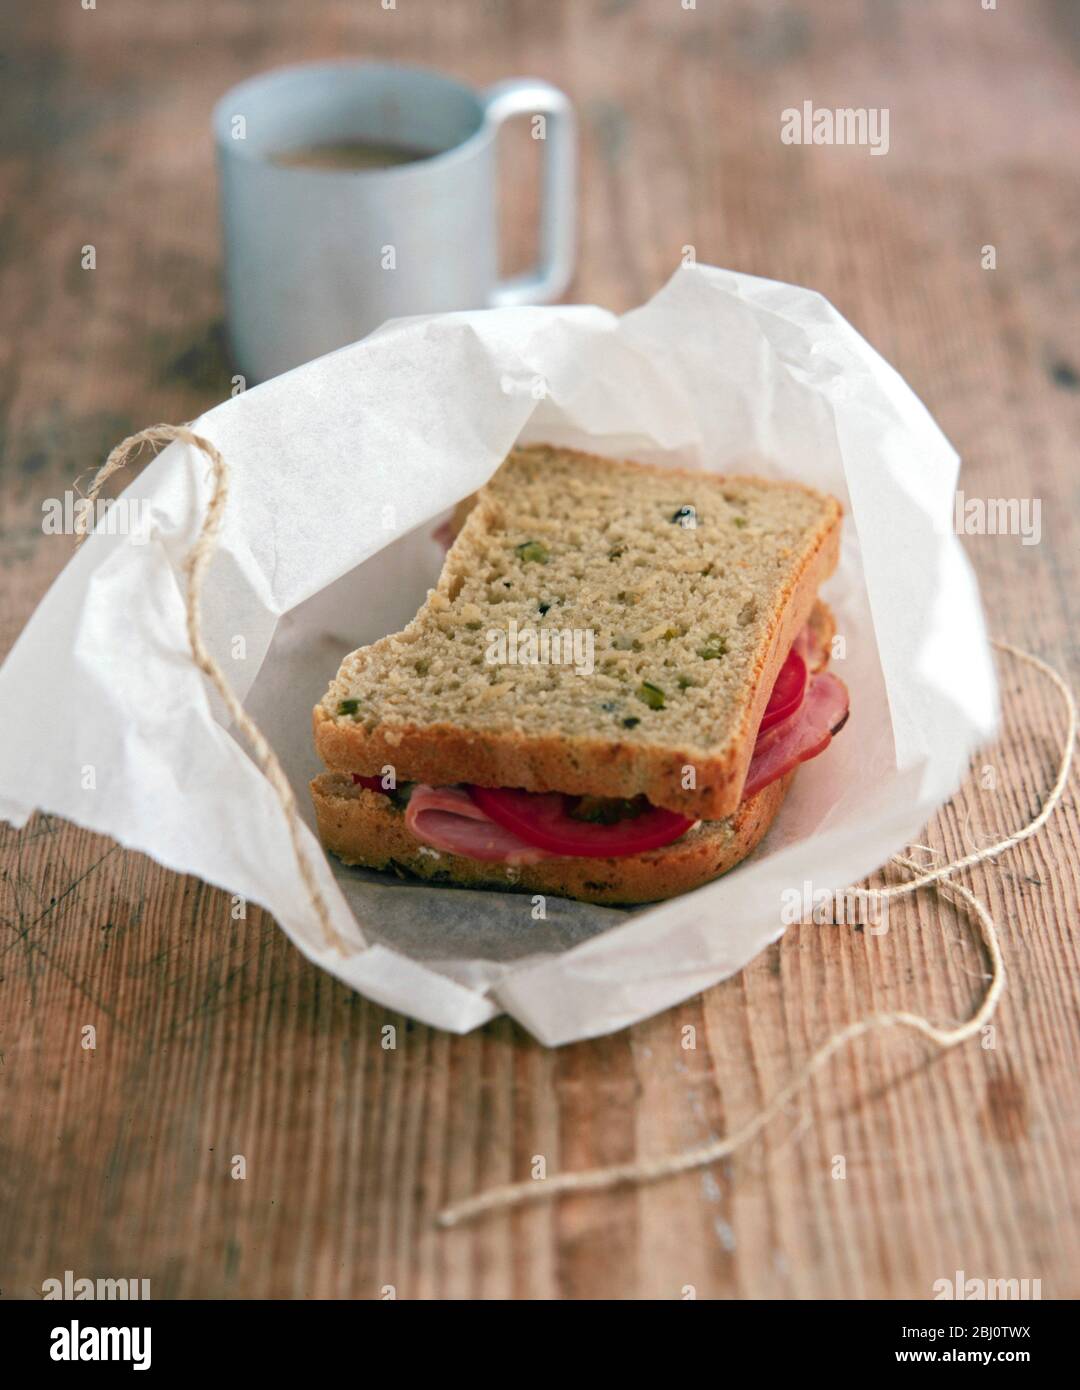 Brotsandwich mit Tomaten und Schinken, ausgepackt aus einem Paket mit fettfestem Papier, gebunden mit Schnur - Stockfoto